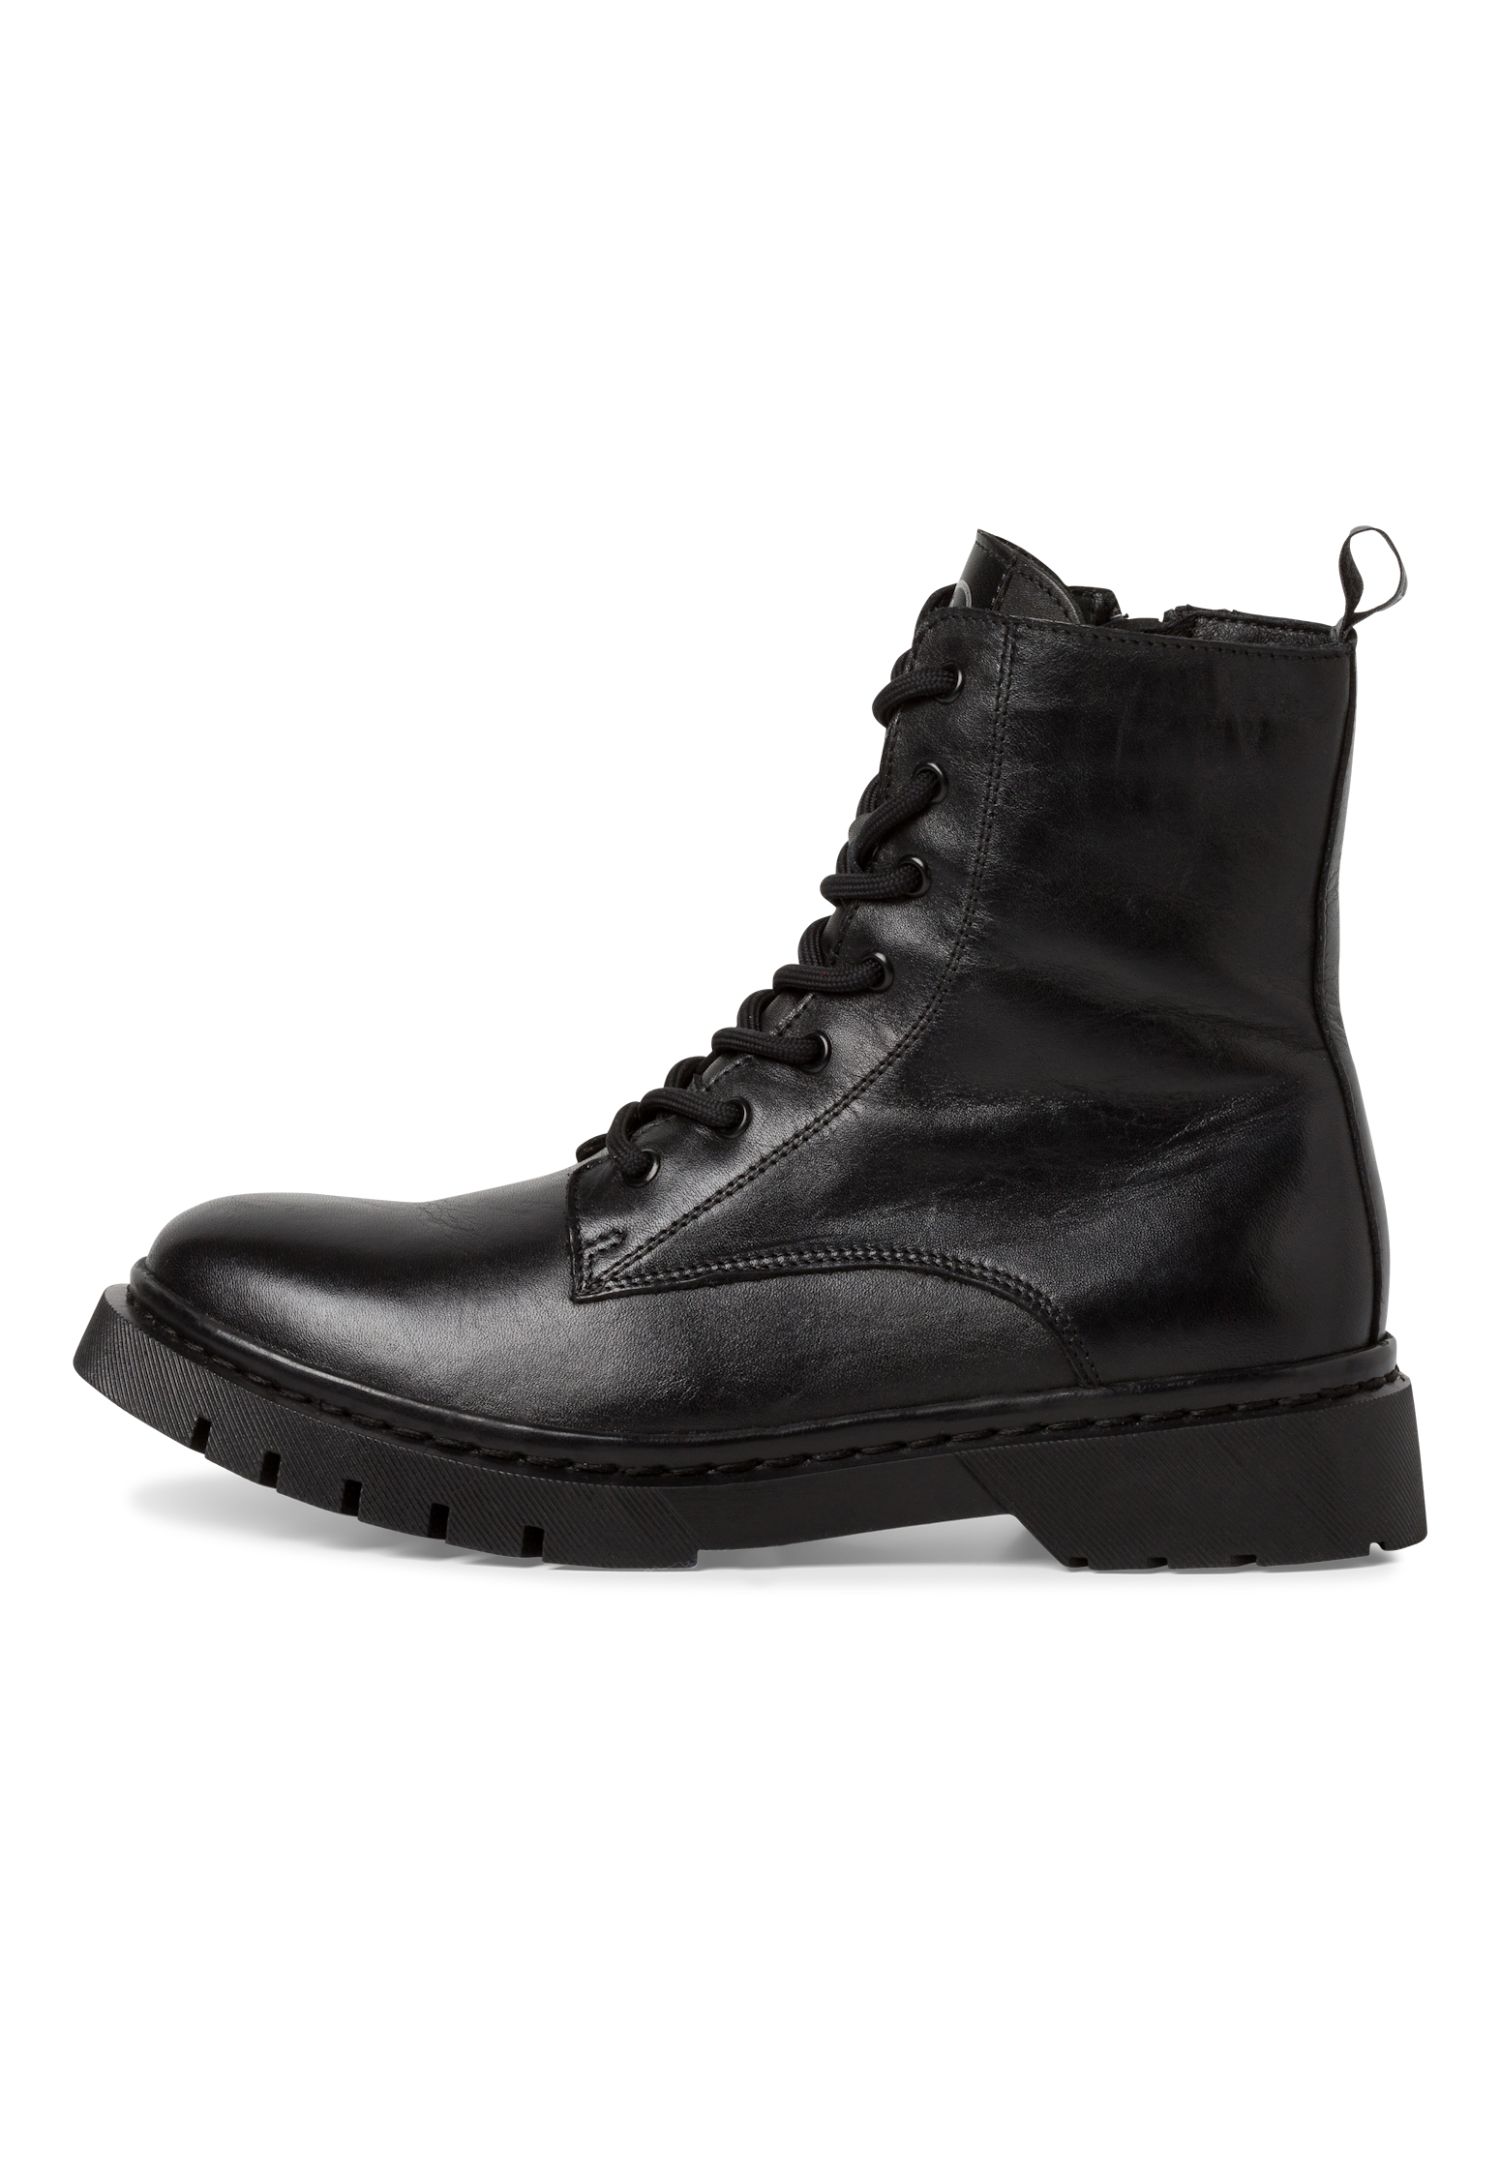 Tamaris Damen Lederstiefel Stiefelette Frauen Ankle Boots schwarz M2526941